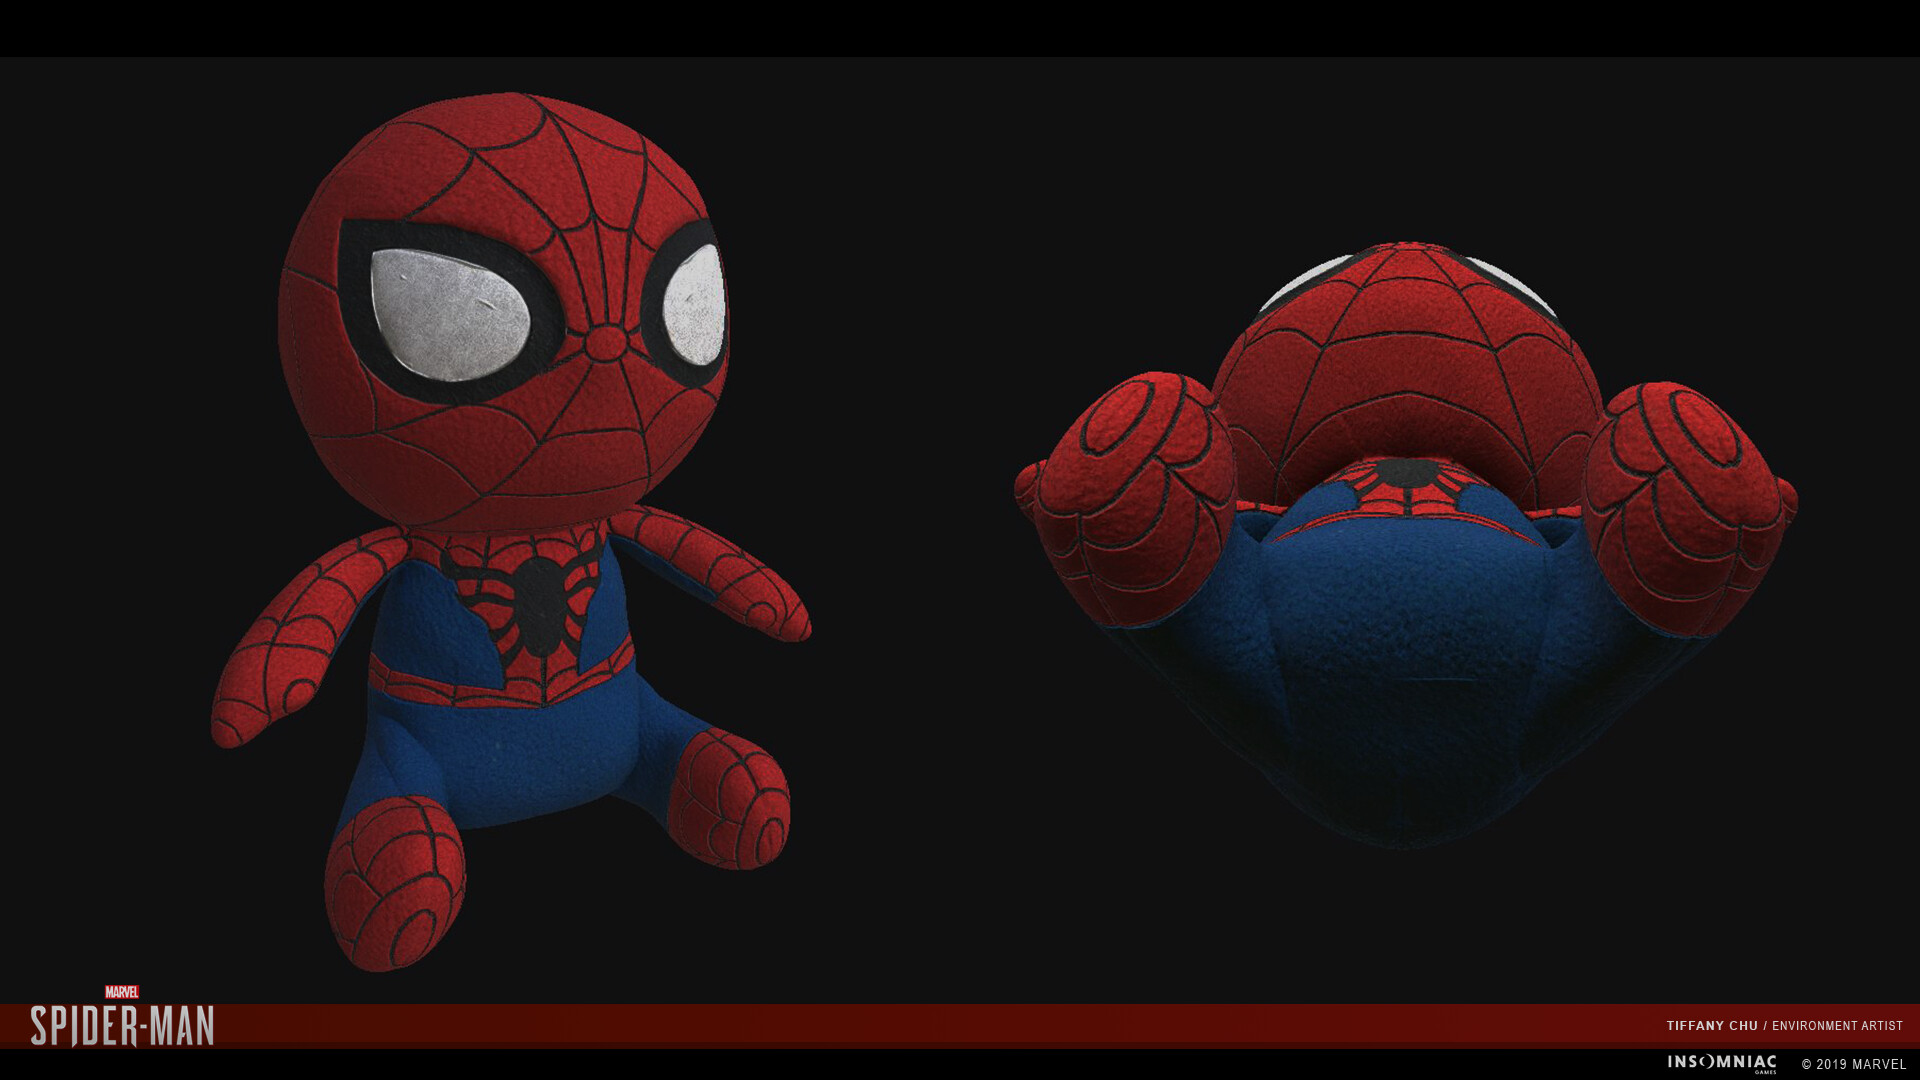 ArtStation - Marvel's Spider-Man: Spider-Plush Collectible